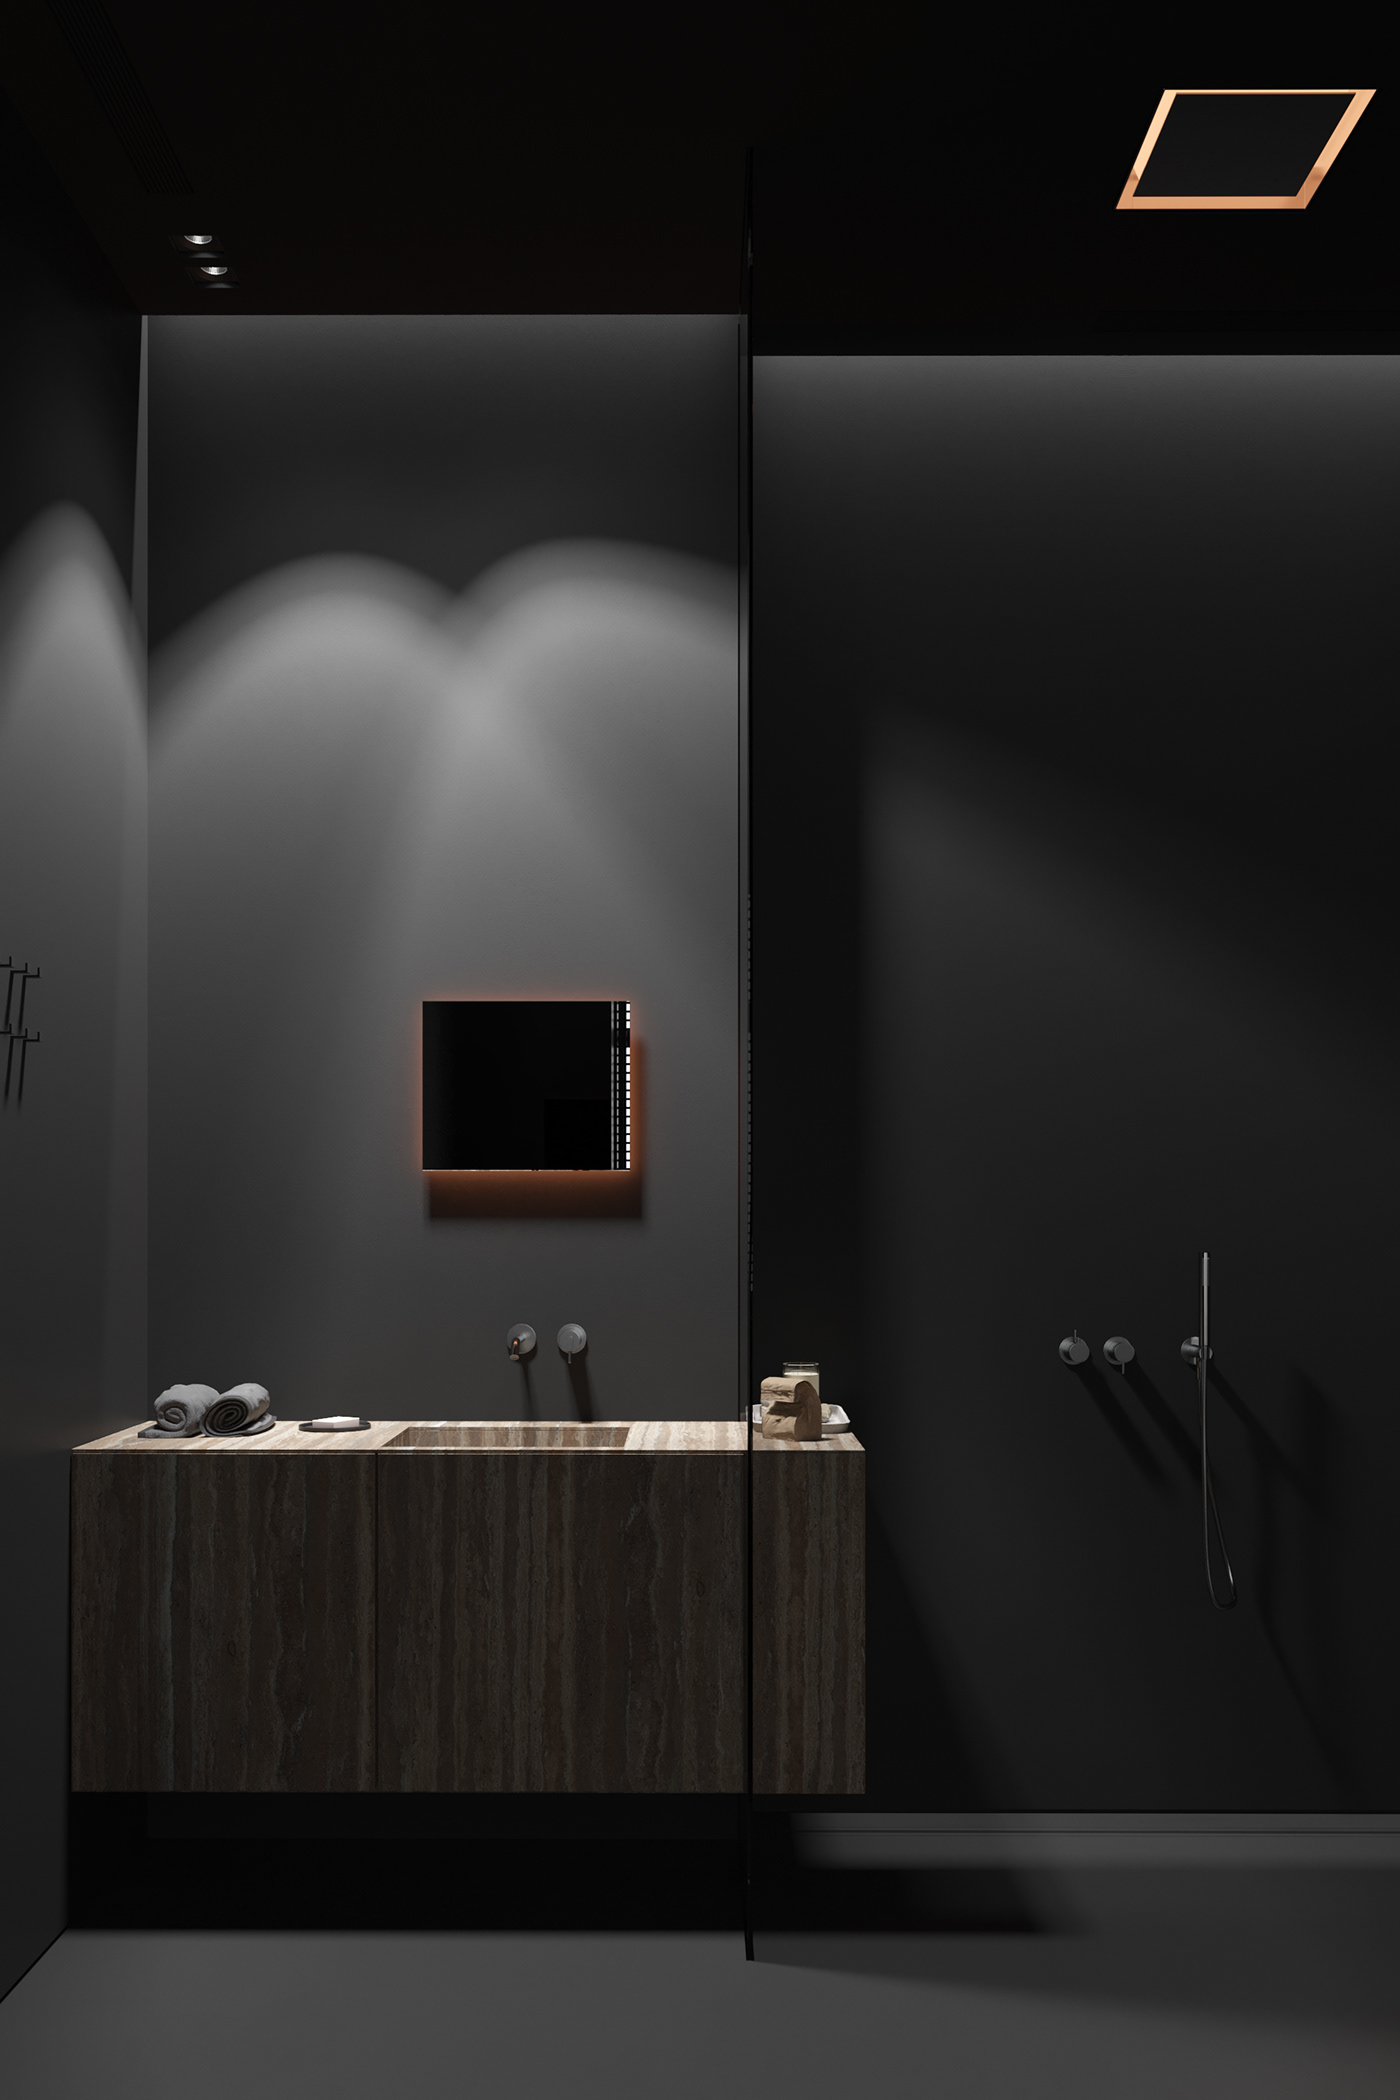 igor sirotov design Interior minimalist dark black interior bathroom kitchen kiev dubai